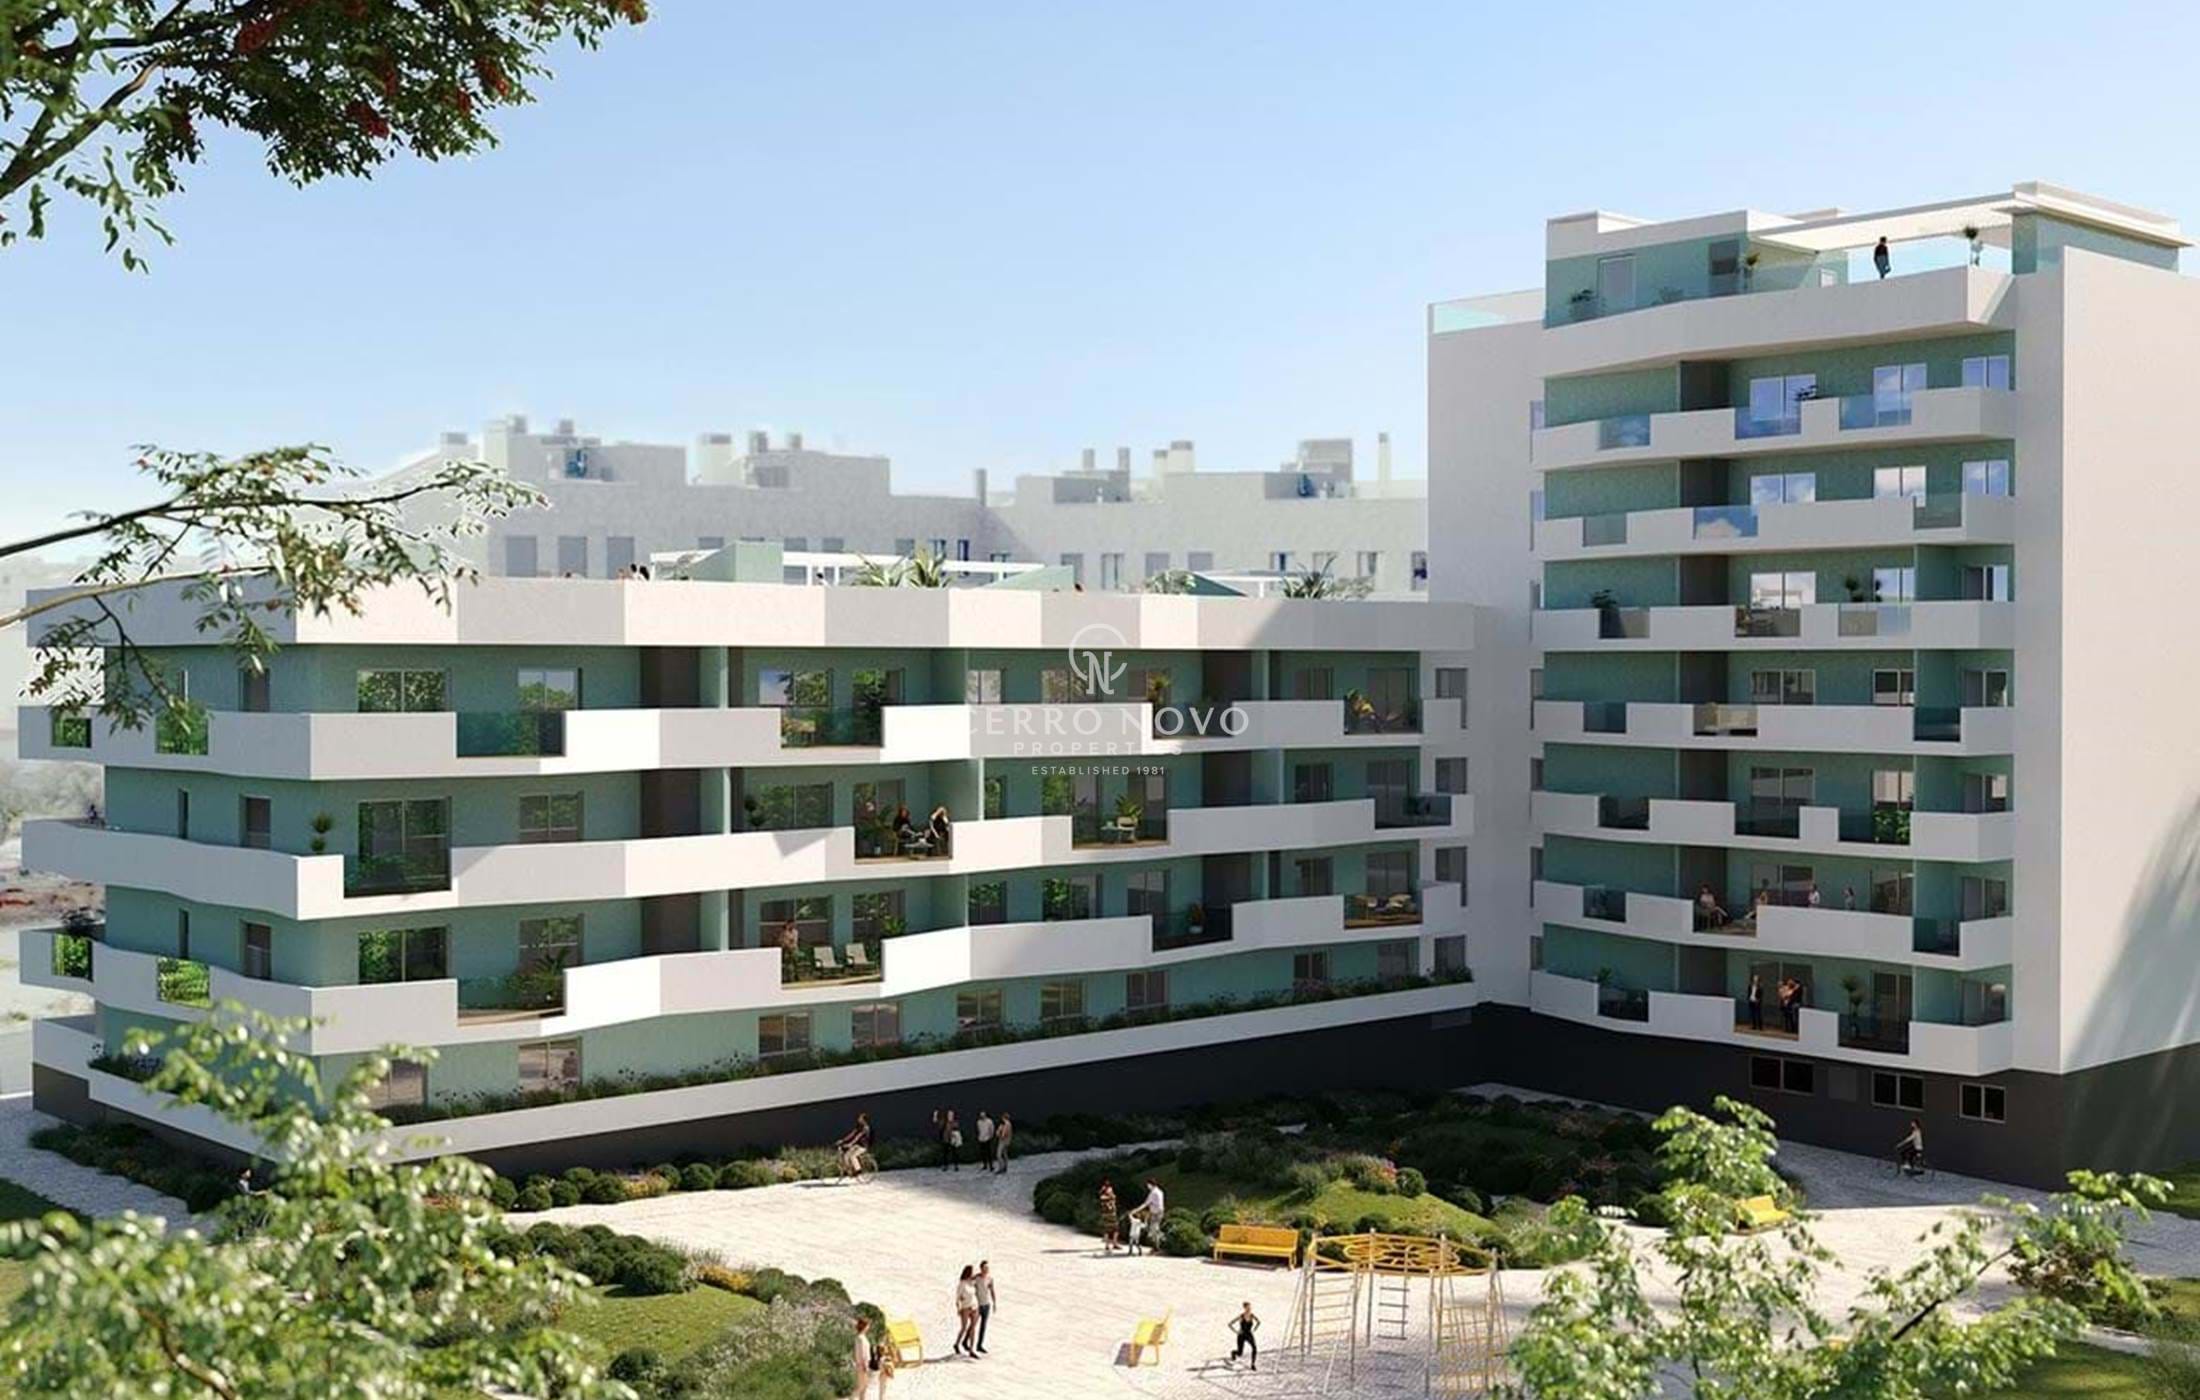 Grands appartements et duplex avec accès aux piscines et espaces partagés.